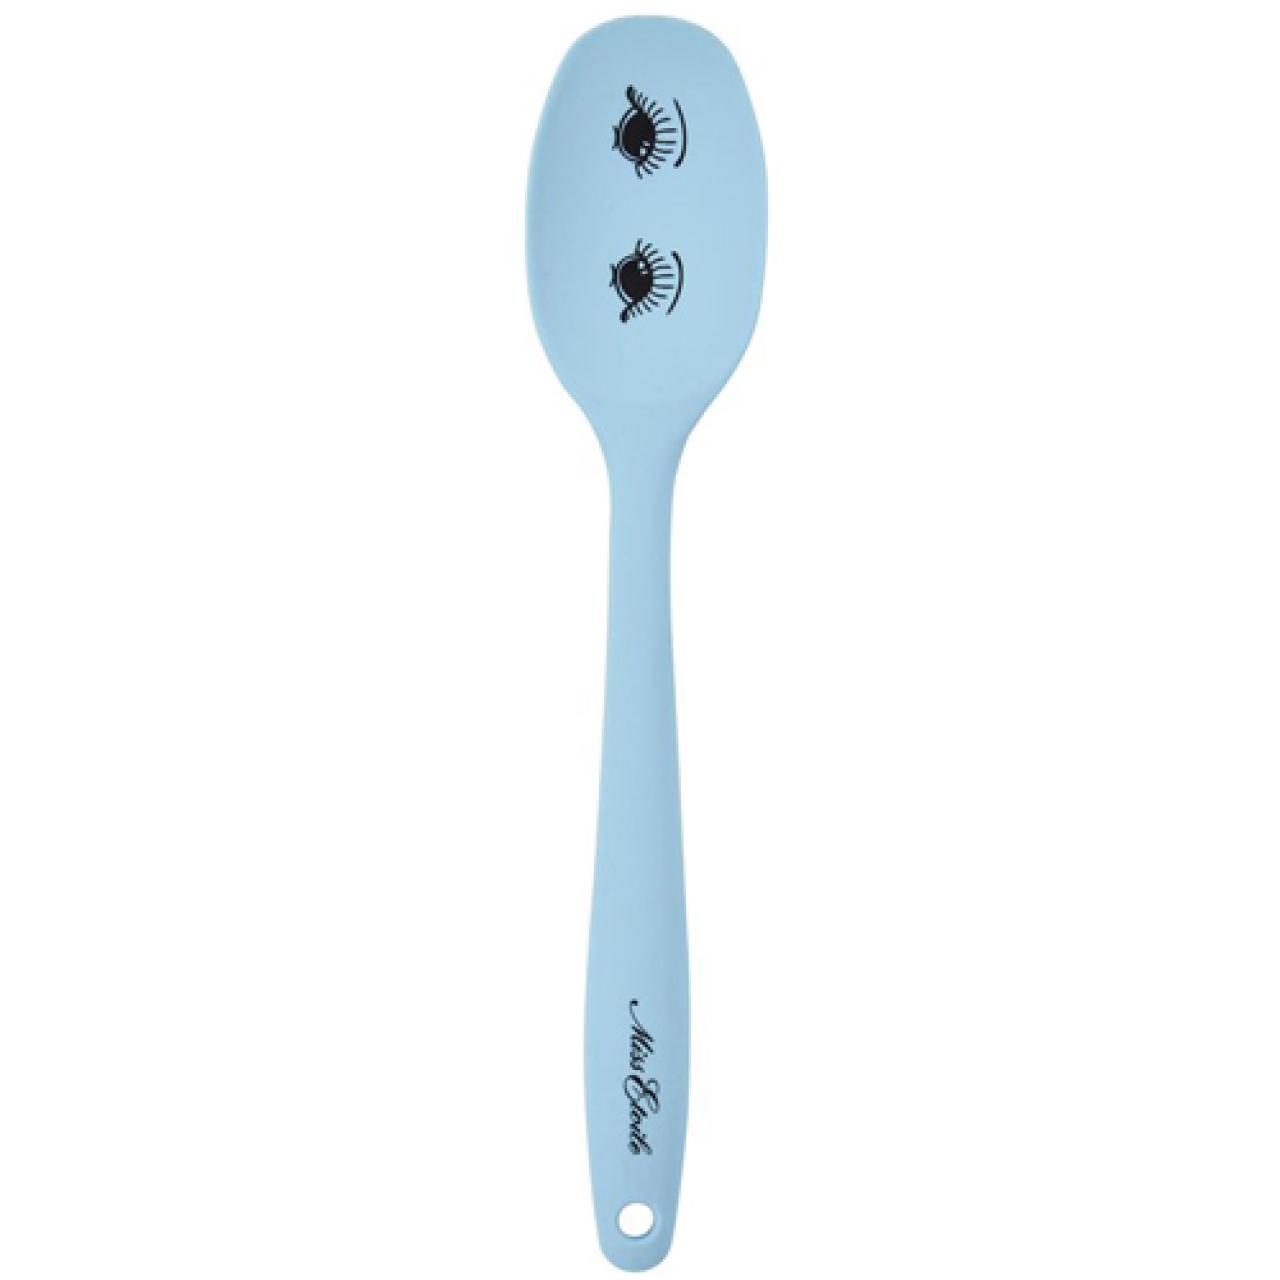 Teigschaber Löffel Blau, Silikon, 28 cm